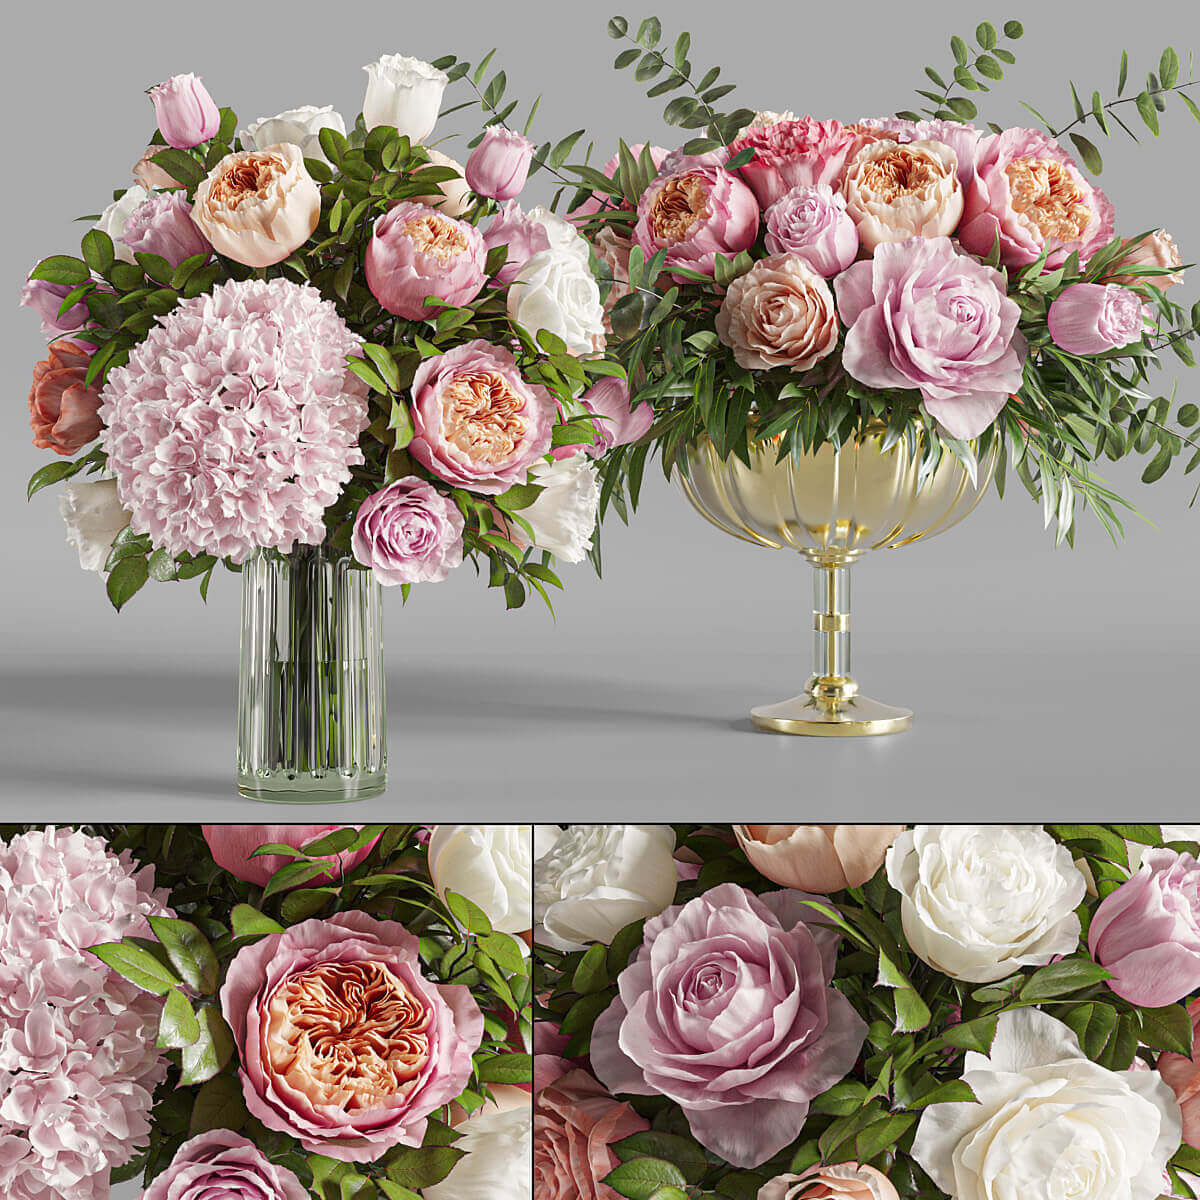 装饰玻璃花瓶中的玫瑰和绣球花束3D模型（OBJ,MAX）插图